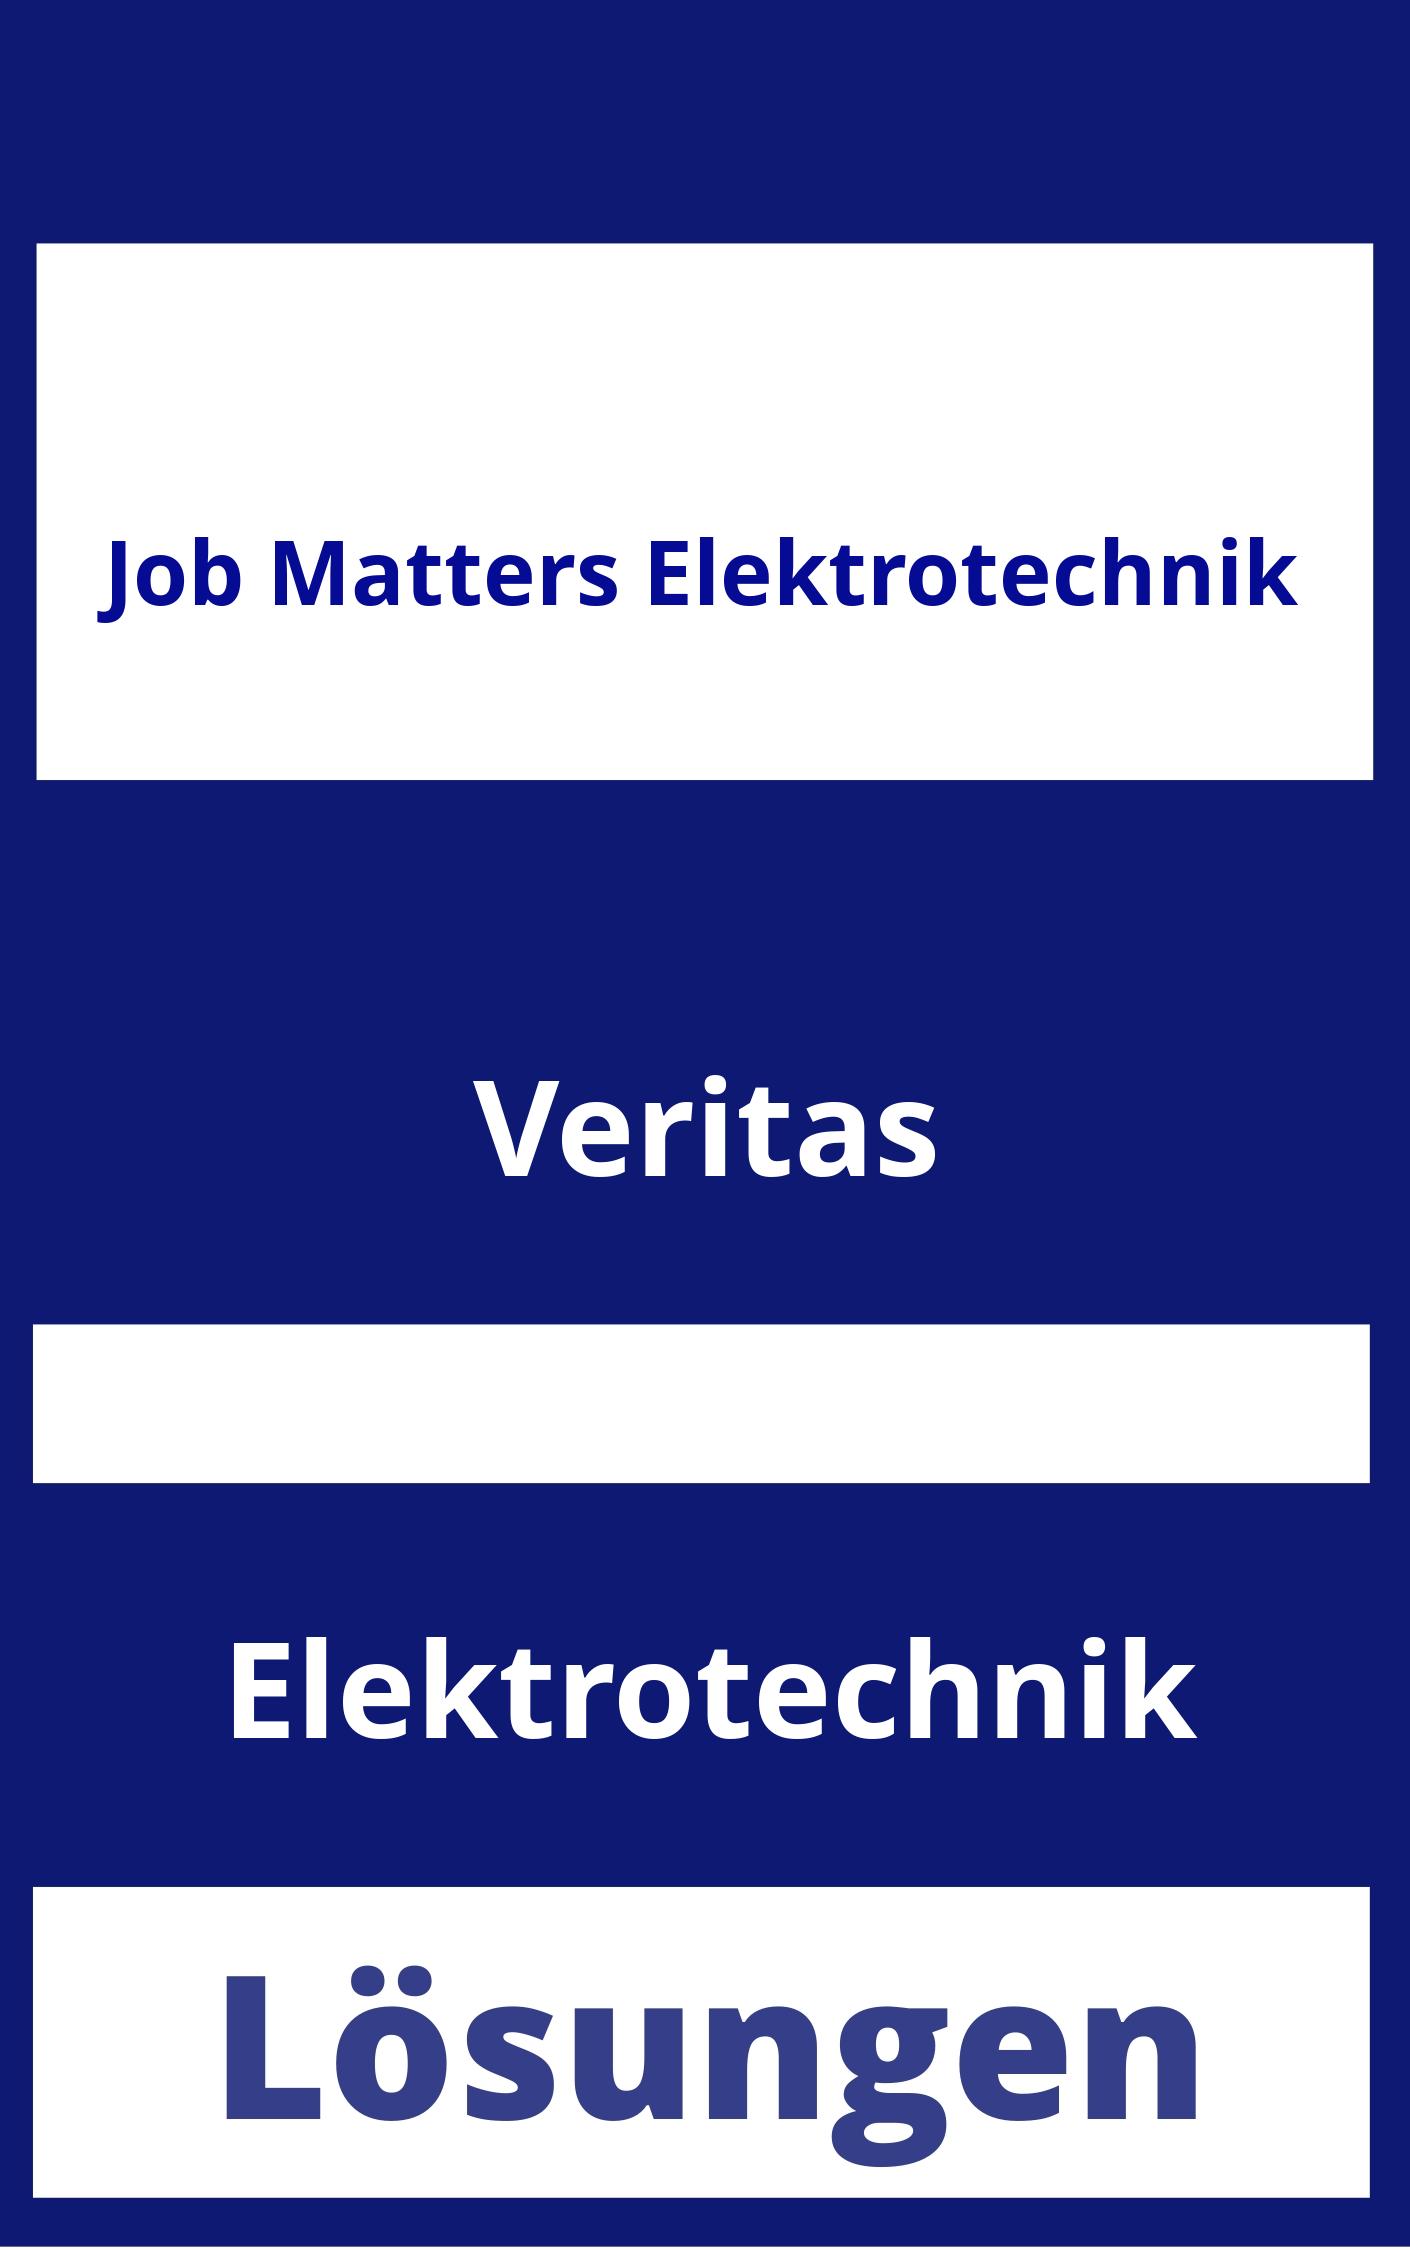 Job Matters Elektrotechnik